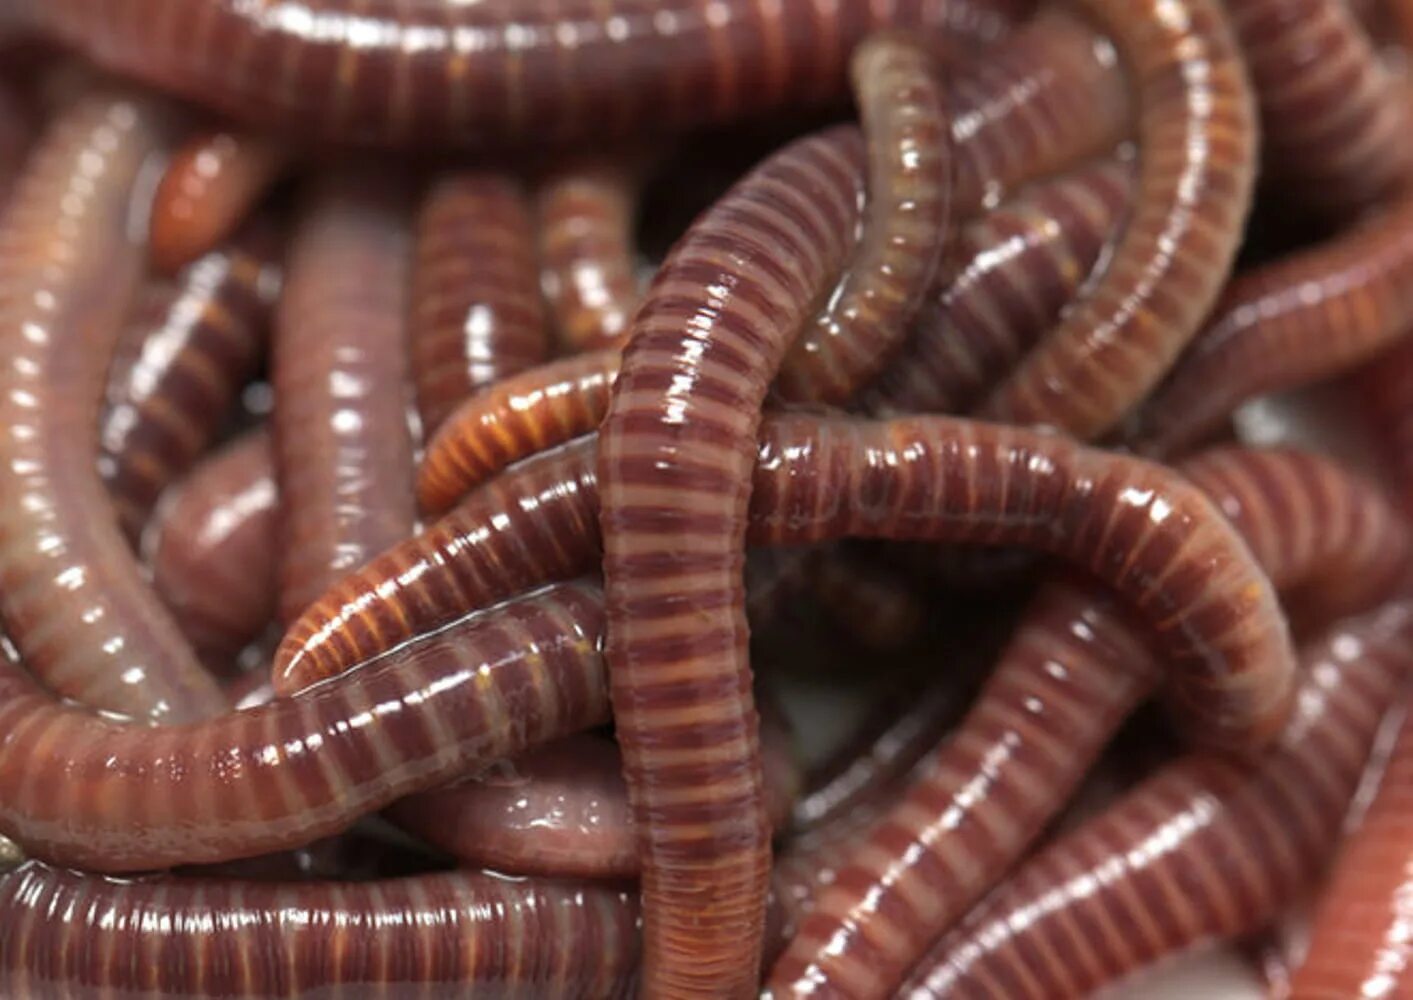 Красный червь (Lumbricus rubellus. Новые черви